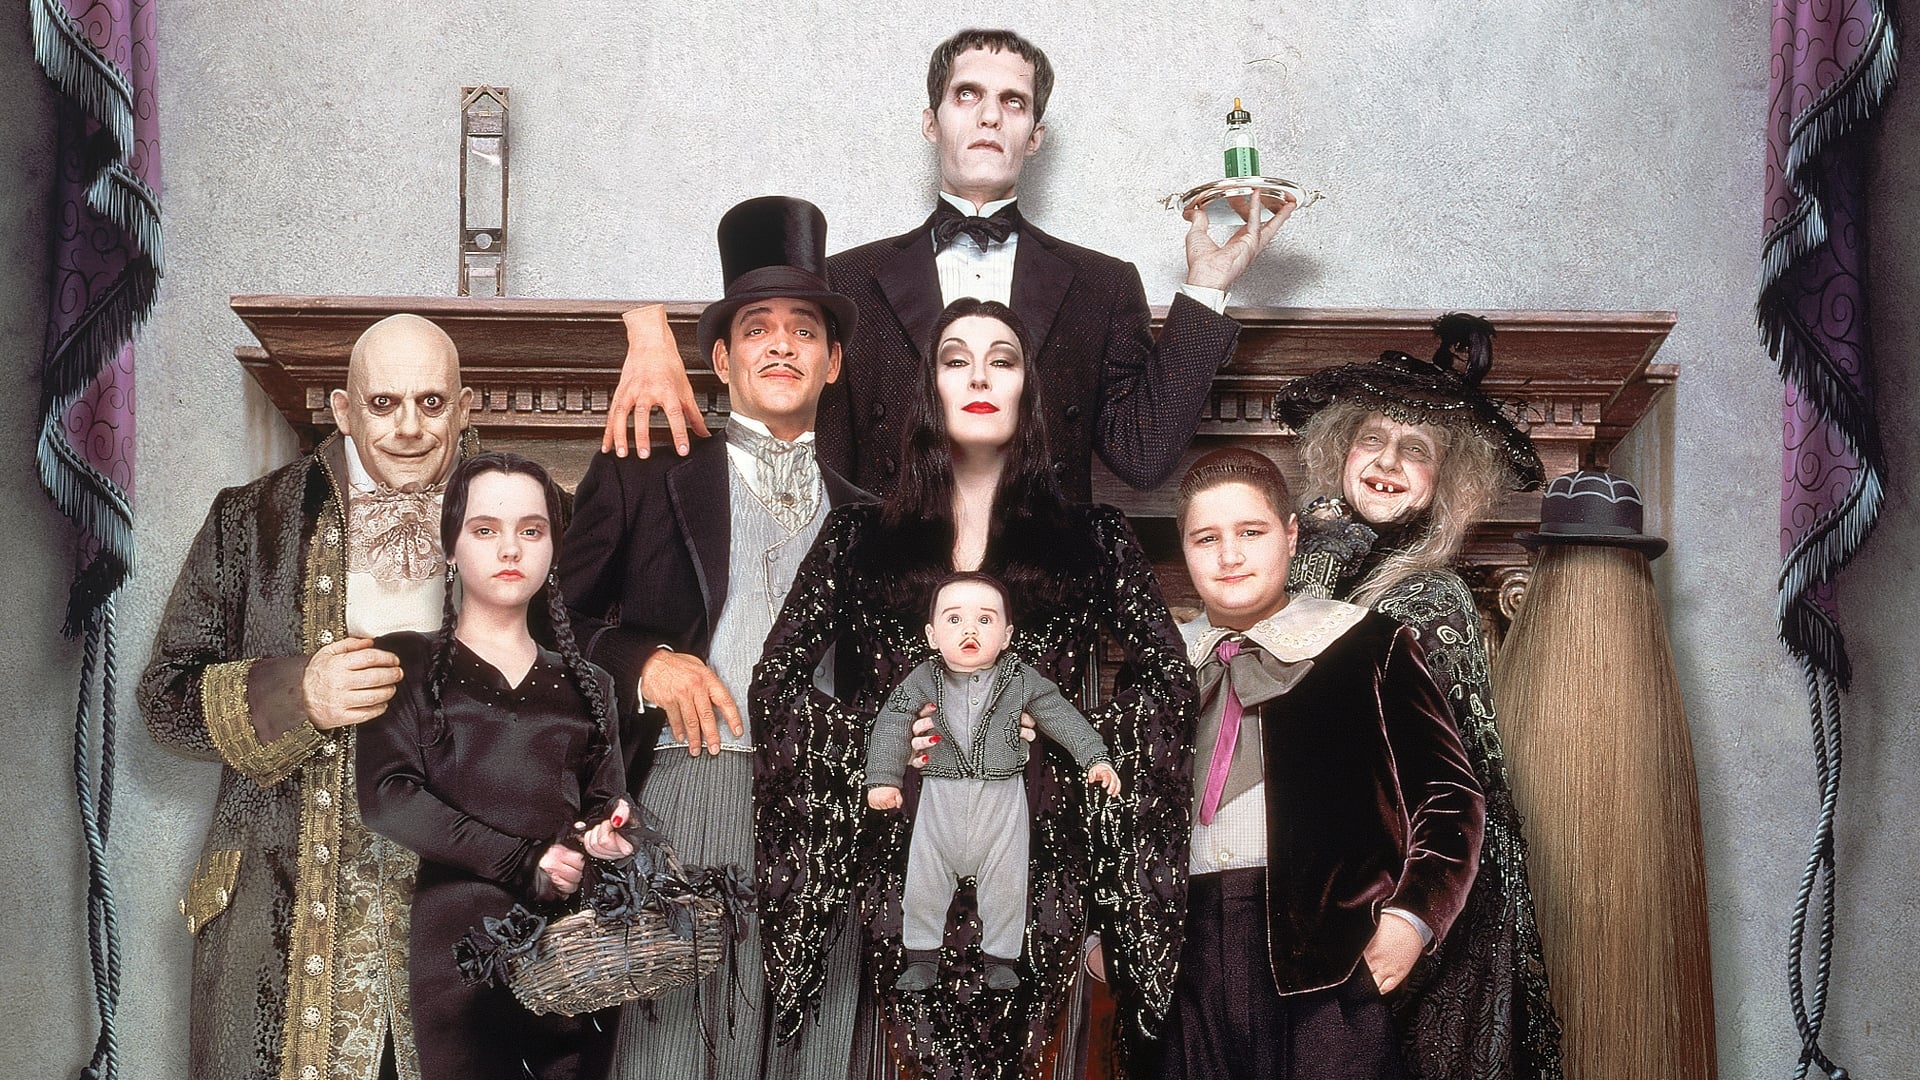 Rodzina Addamsów 2 (1993)